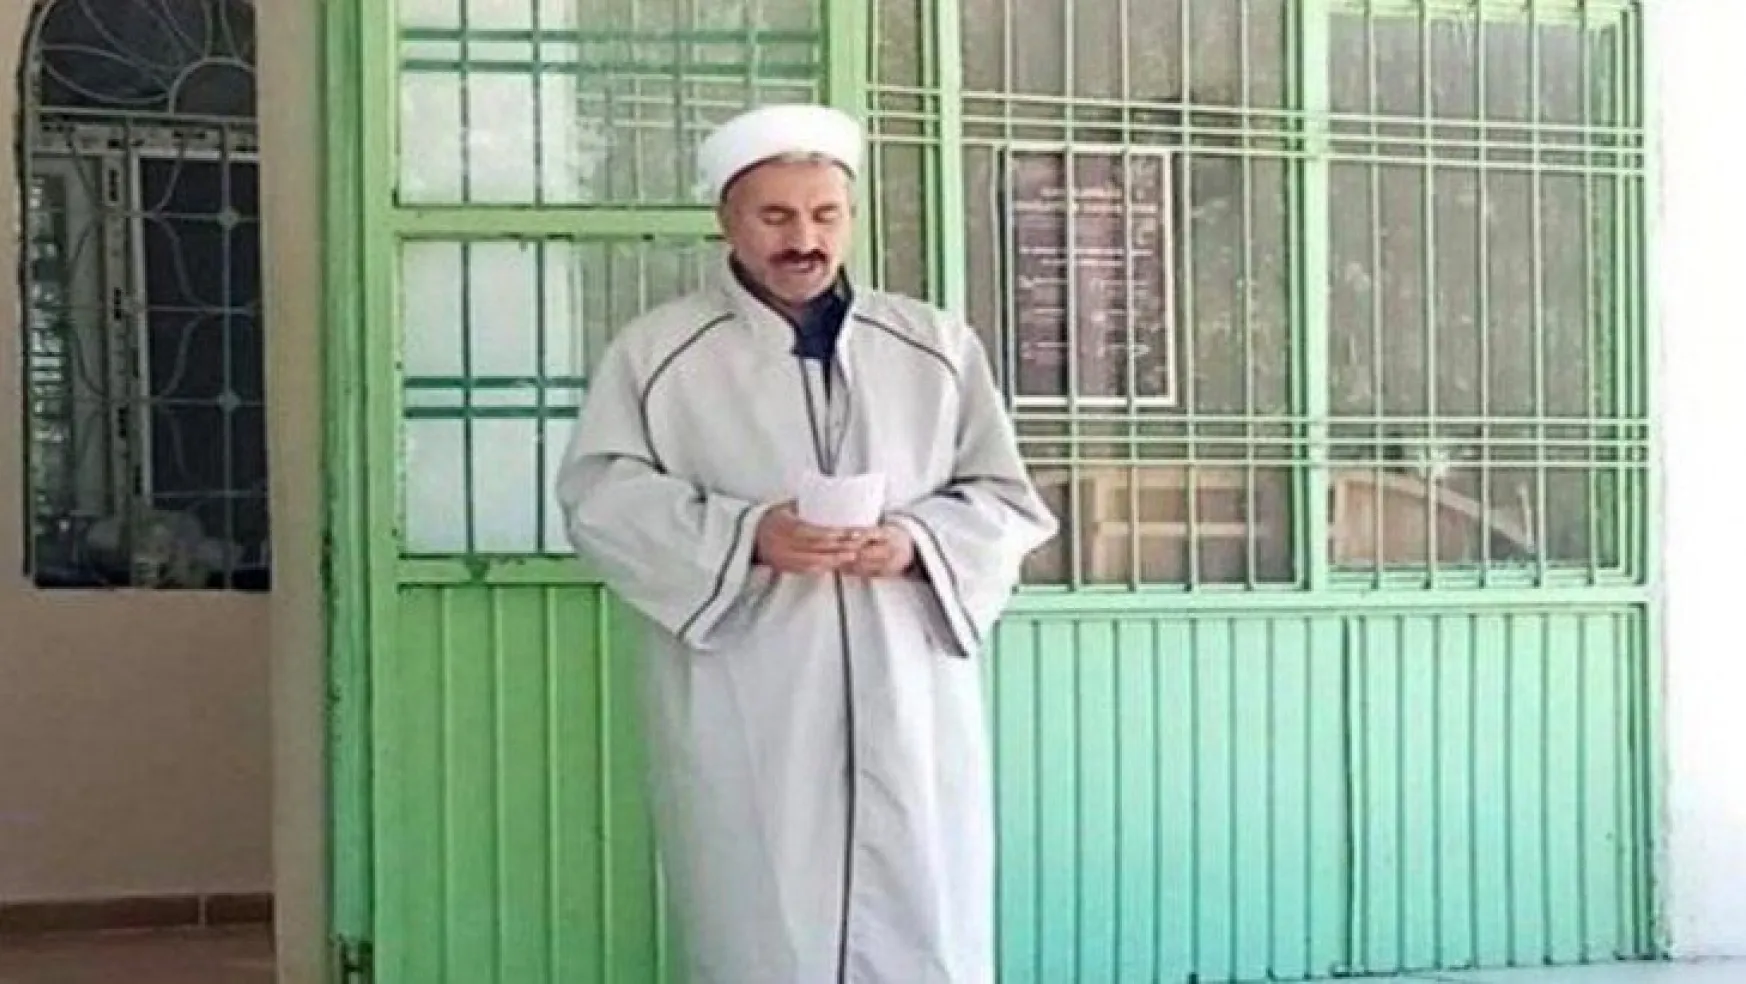 Ceza olarak koronalı cenaze yıkatılan imam koronadan öldü!